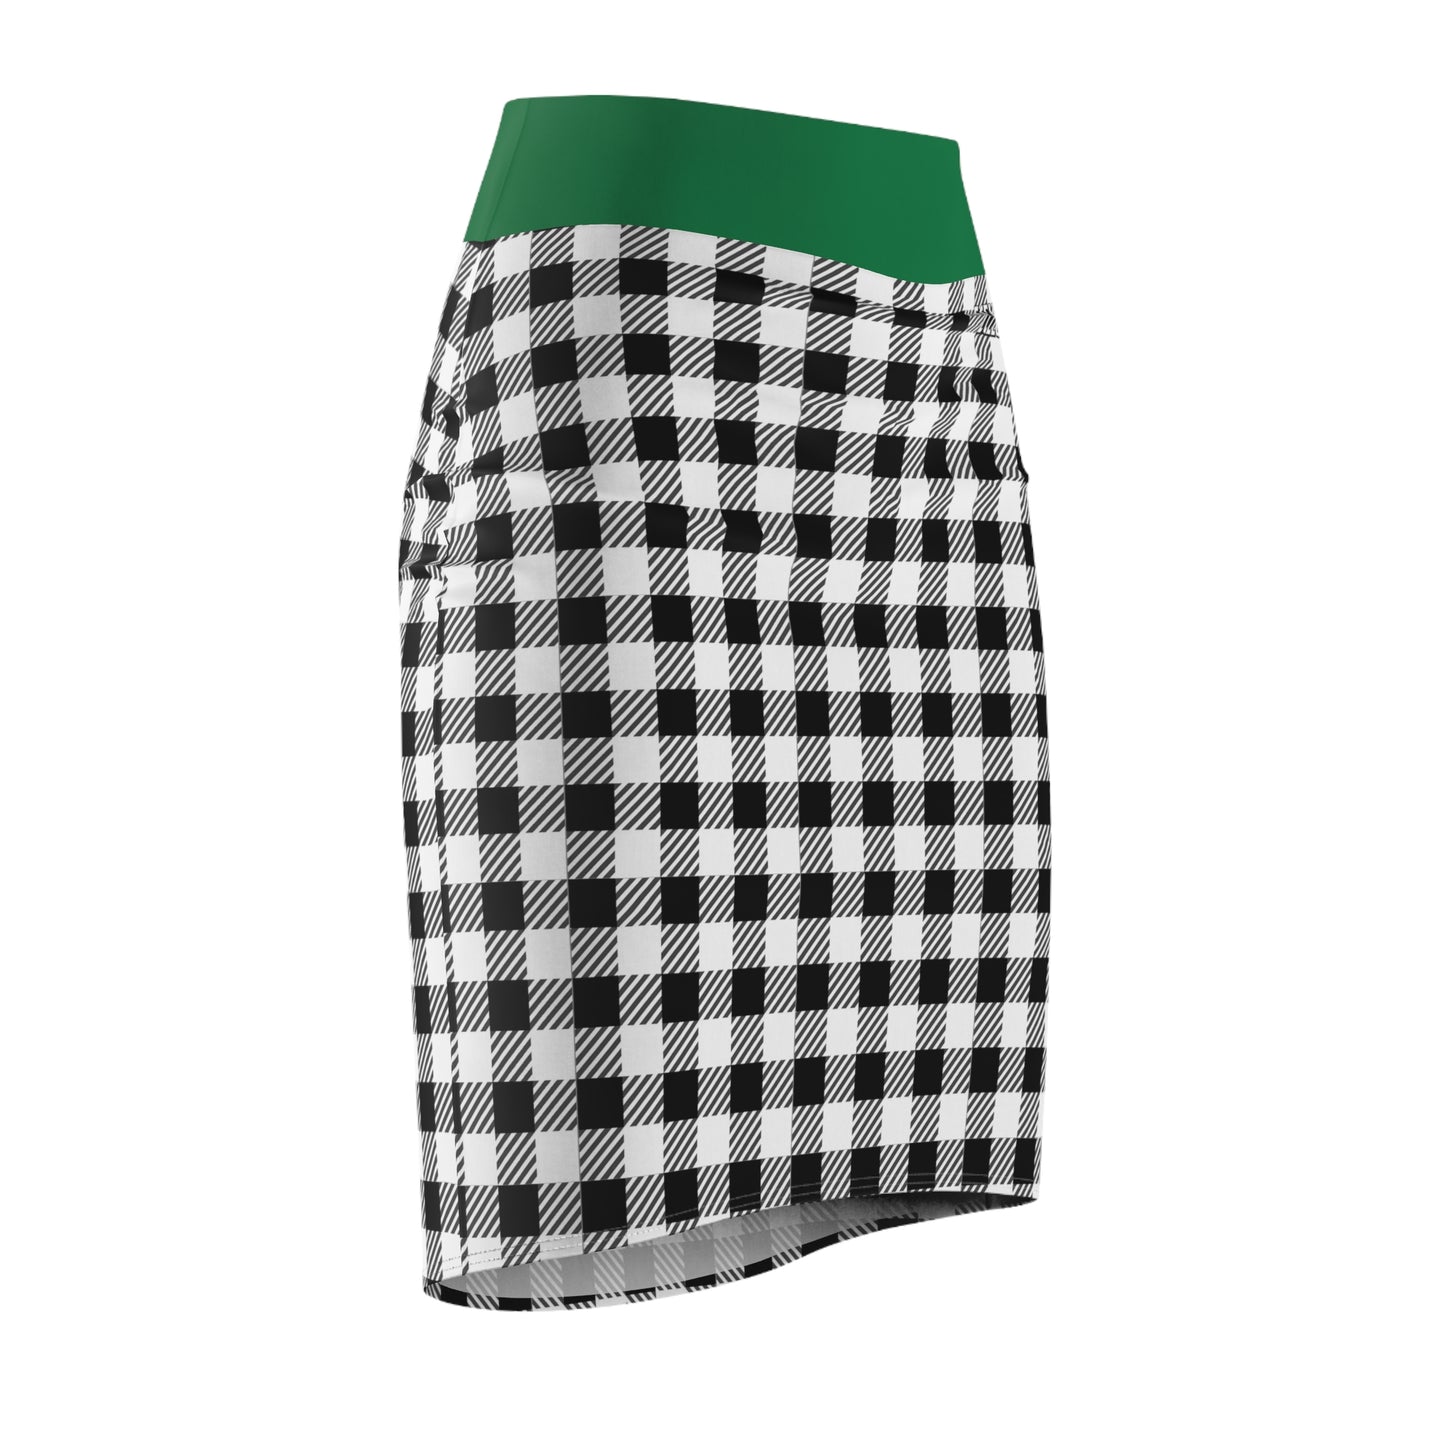 ECELUGICH® Women's Pencil Skirt